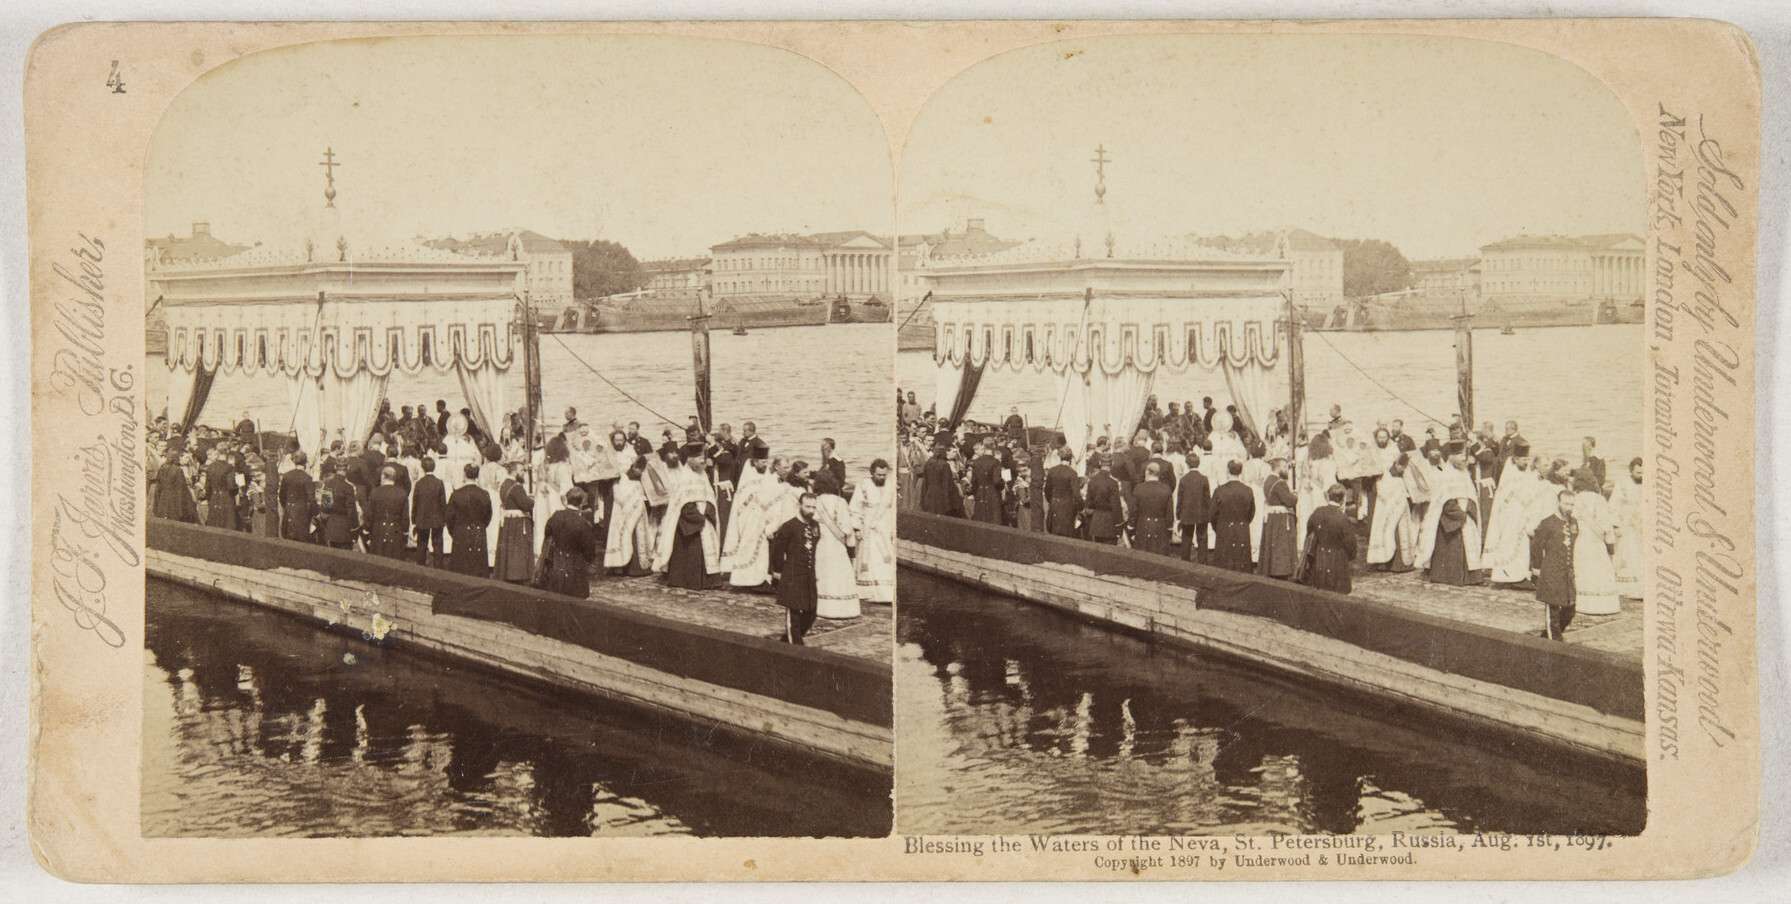 Освящение воды в Неве 1 августа 1897, 1 августа 1897. 
 

Фирма «Underwood & Underwood» 
 